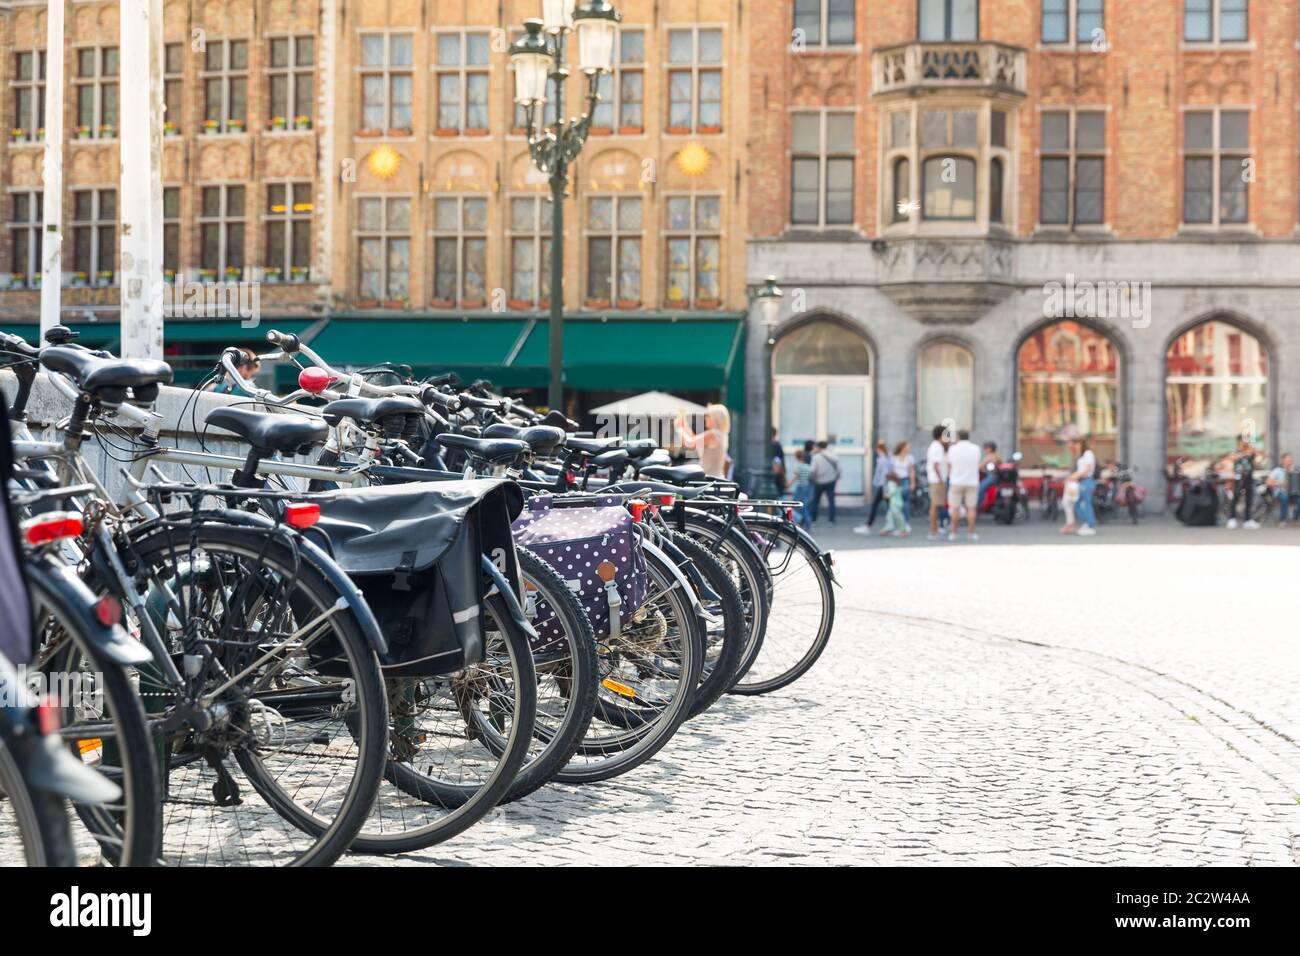 Fahrräder auf dem Platz, Leute im Straßencafé im Hintergrund, alte europäische Touristenstadt. Sommer Tourismus und Reisen, berühmte europa Wahrzeichen, beliebt pl Stockfoto